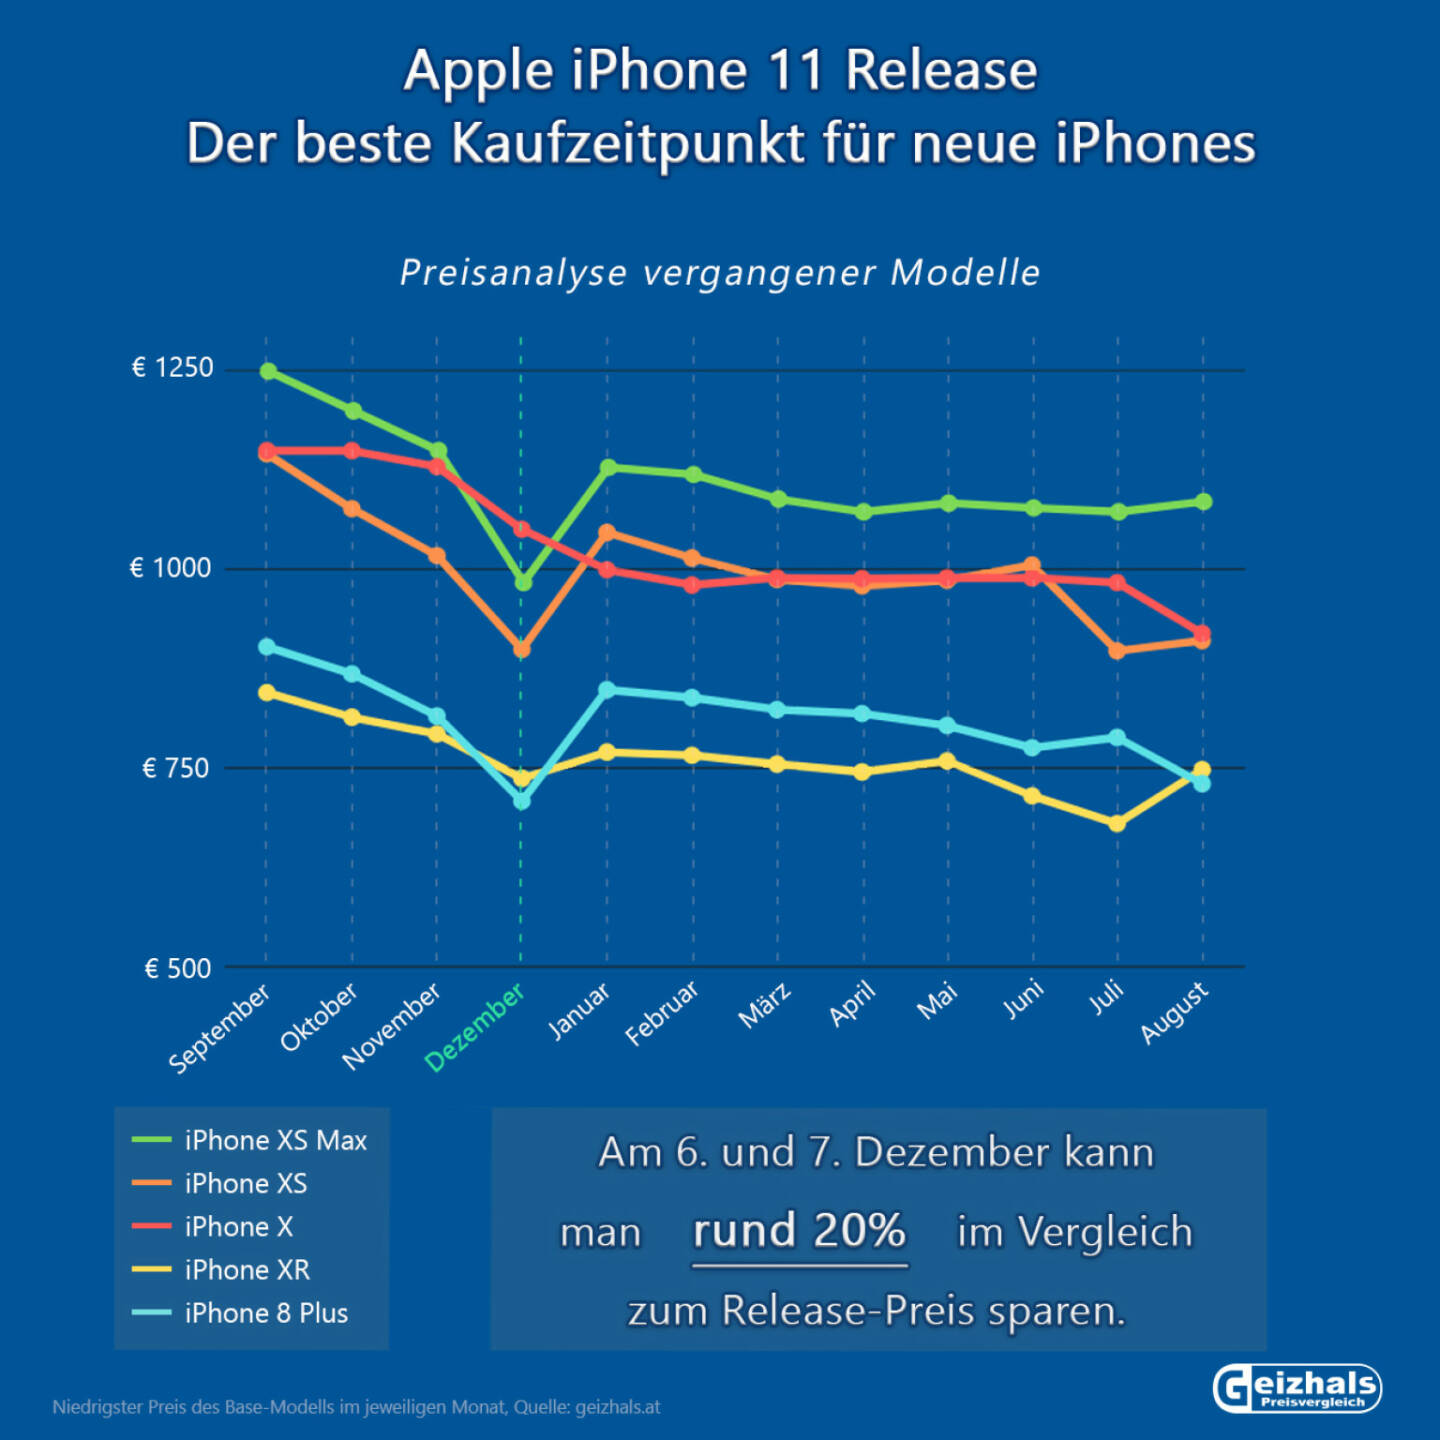 Bei iPhones kann man schon nach 2,5 Monaten ab Verkaufsstart mit einer Preisersparnis von rund 20% rechnen. Fotocredit:geizhals.at